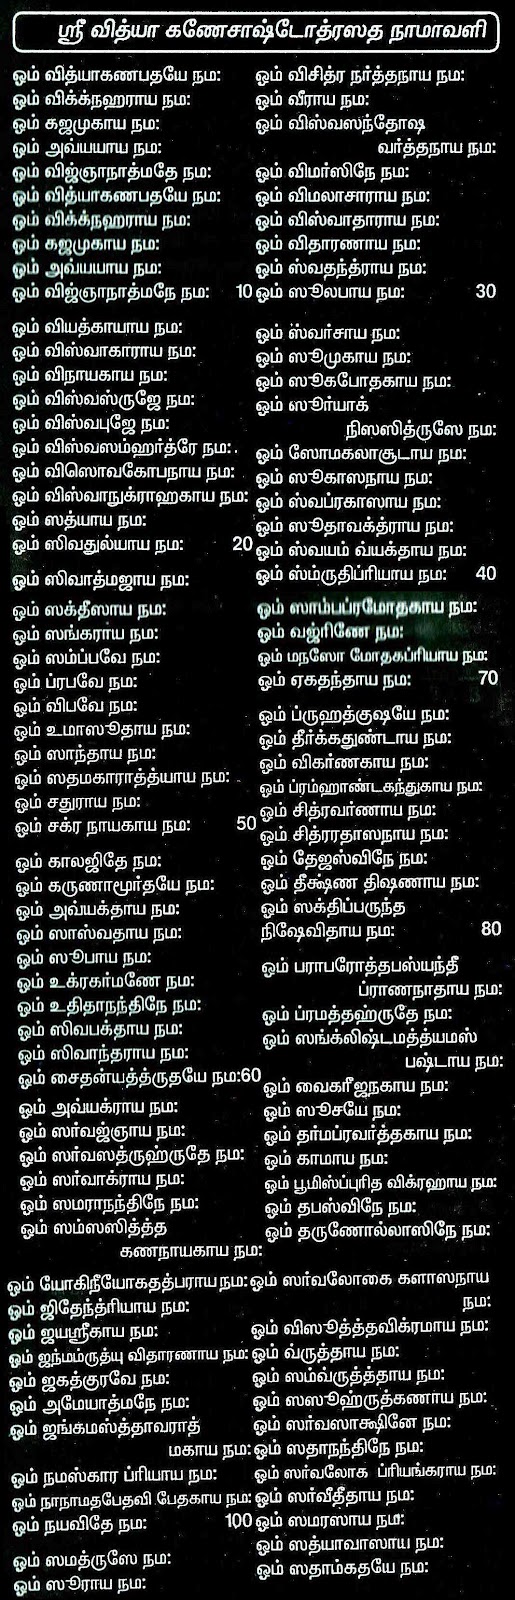 1008 names of lord shiva in tamil pdf